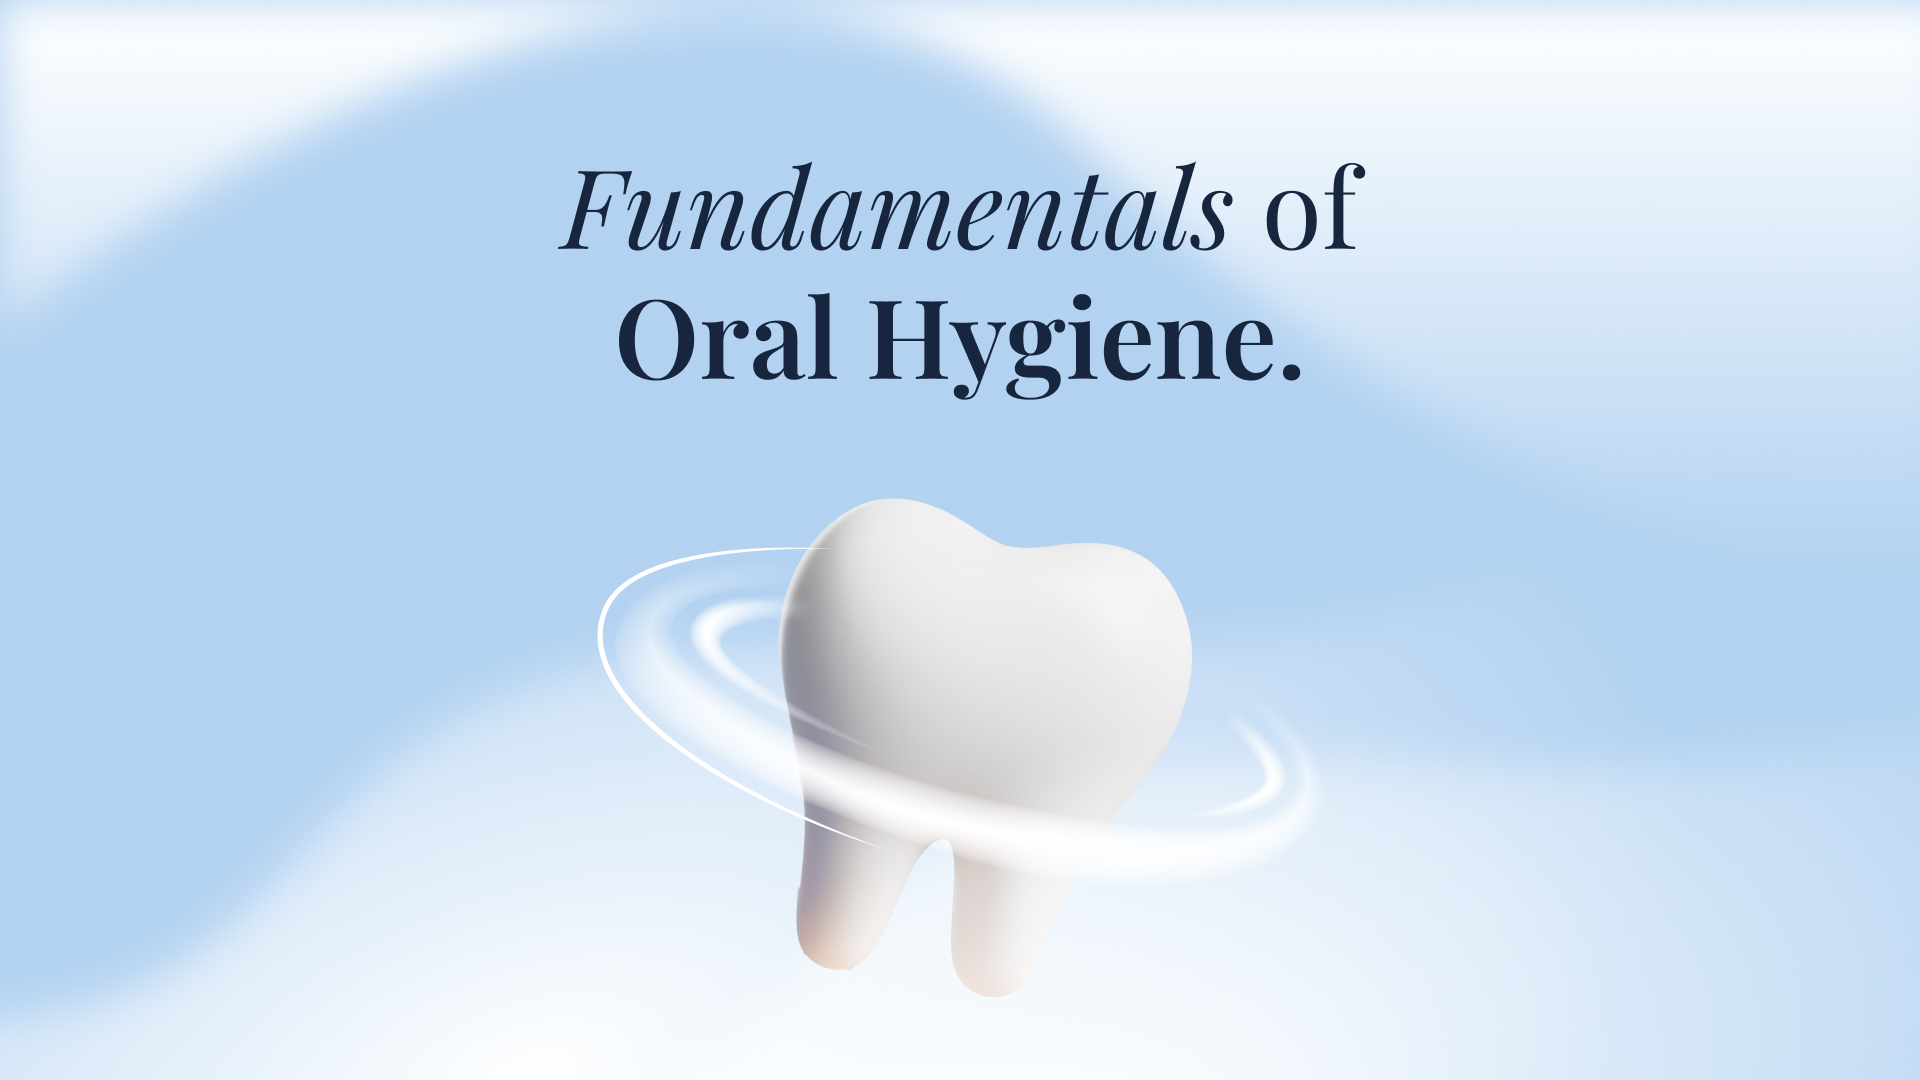 Fundamentals of Oral Hygiene